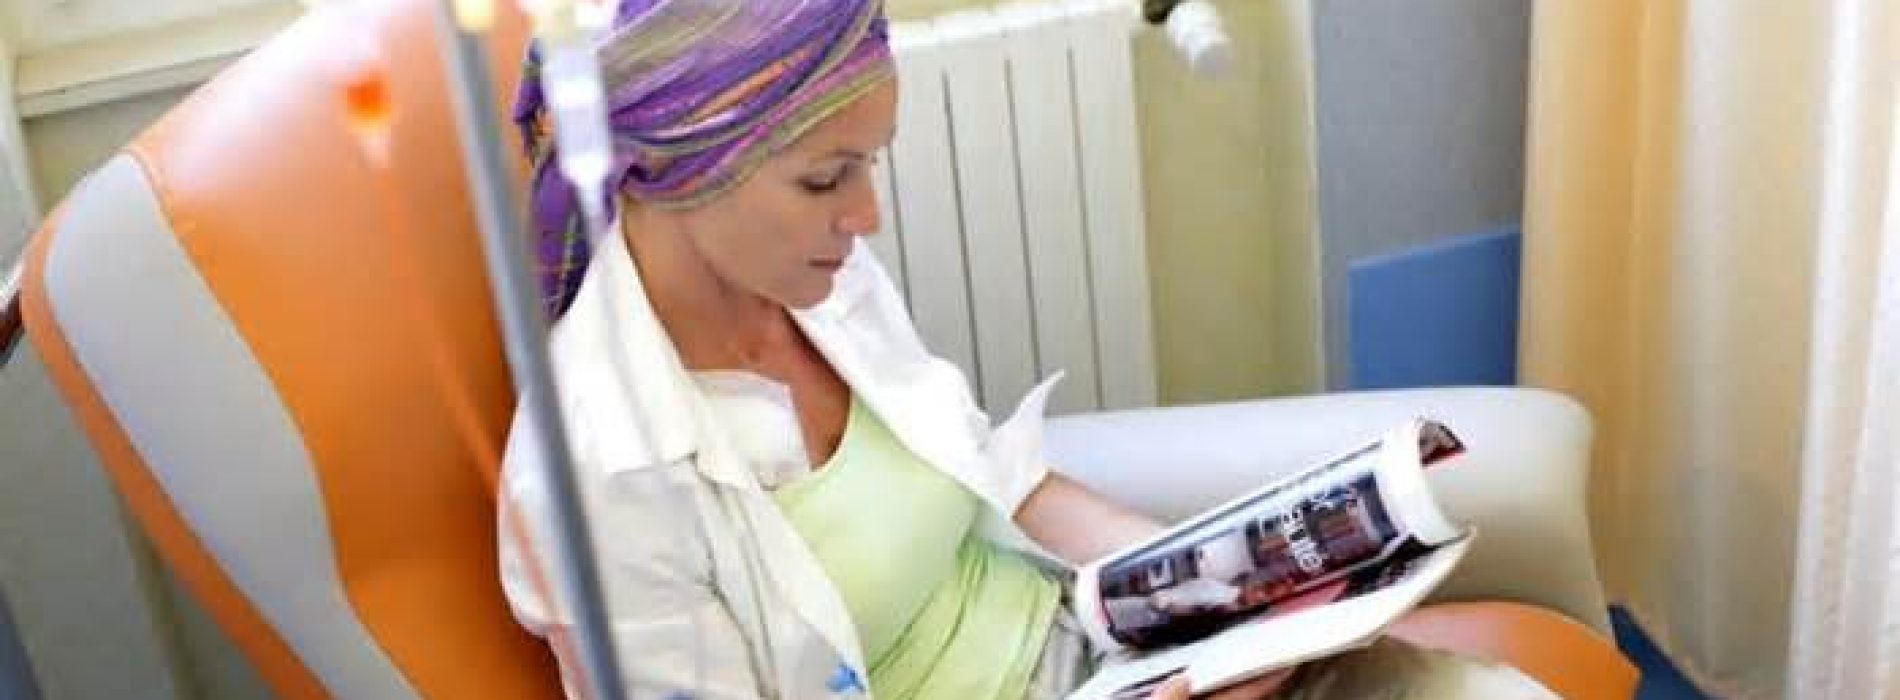 Chemotherapie verspreidt kanker en veroorzaakt meer agressieve tumoren. Dit nieuwe onderzoek bewijst het